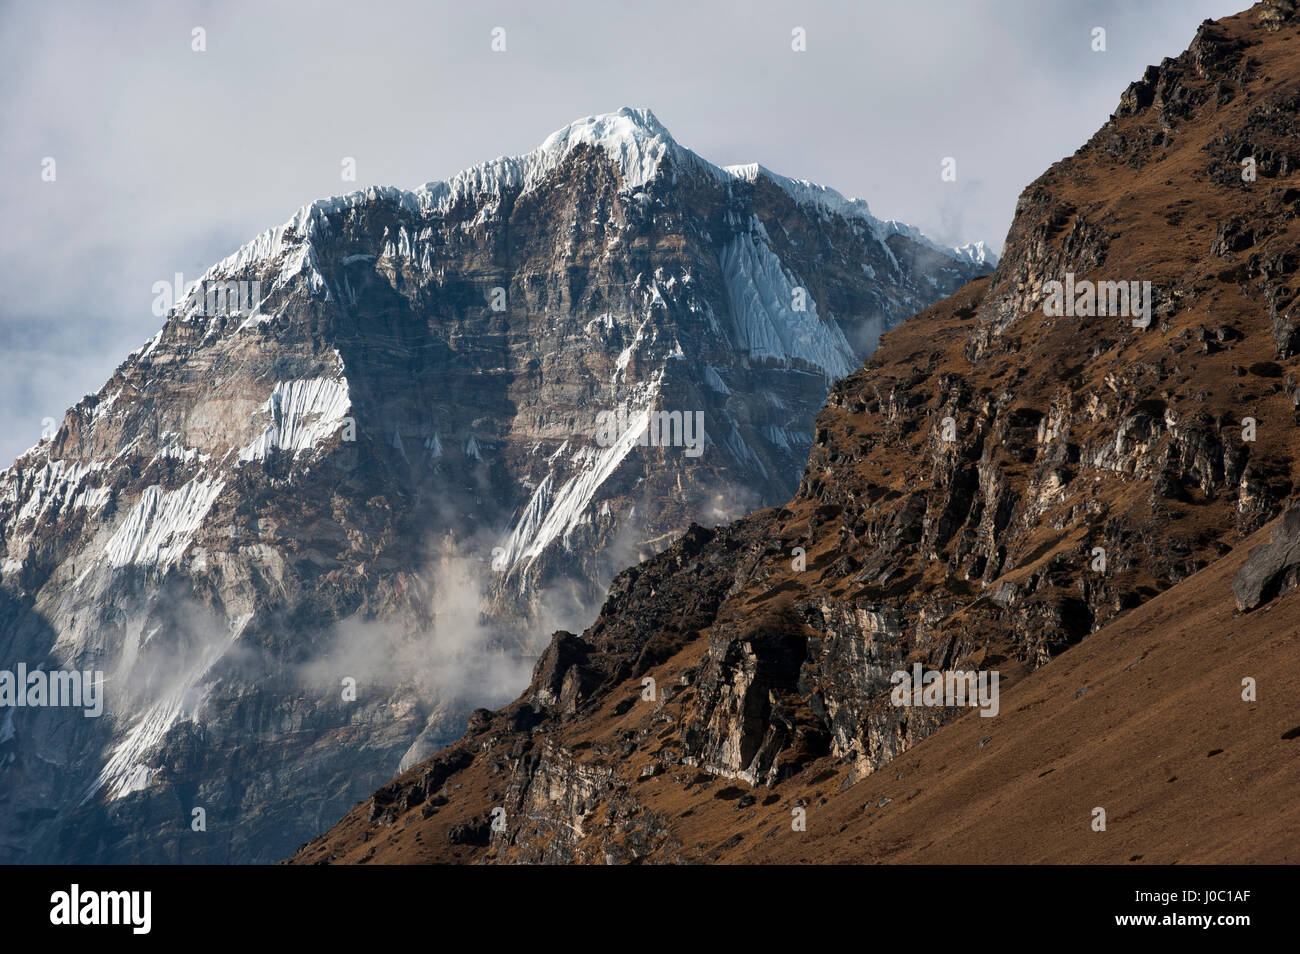 Das sich abzeichnende Gesicht der Jomolhari, die dritte höchste Berg in Bhutan auf 7326m, von dort, Bhutan, Himalaya, Asien gesehen Stockfoto